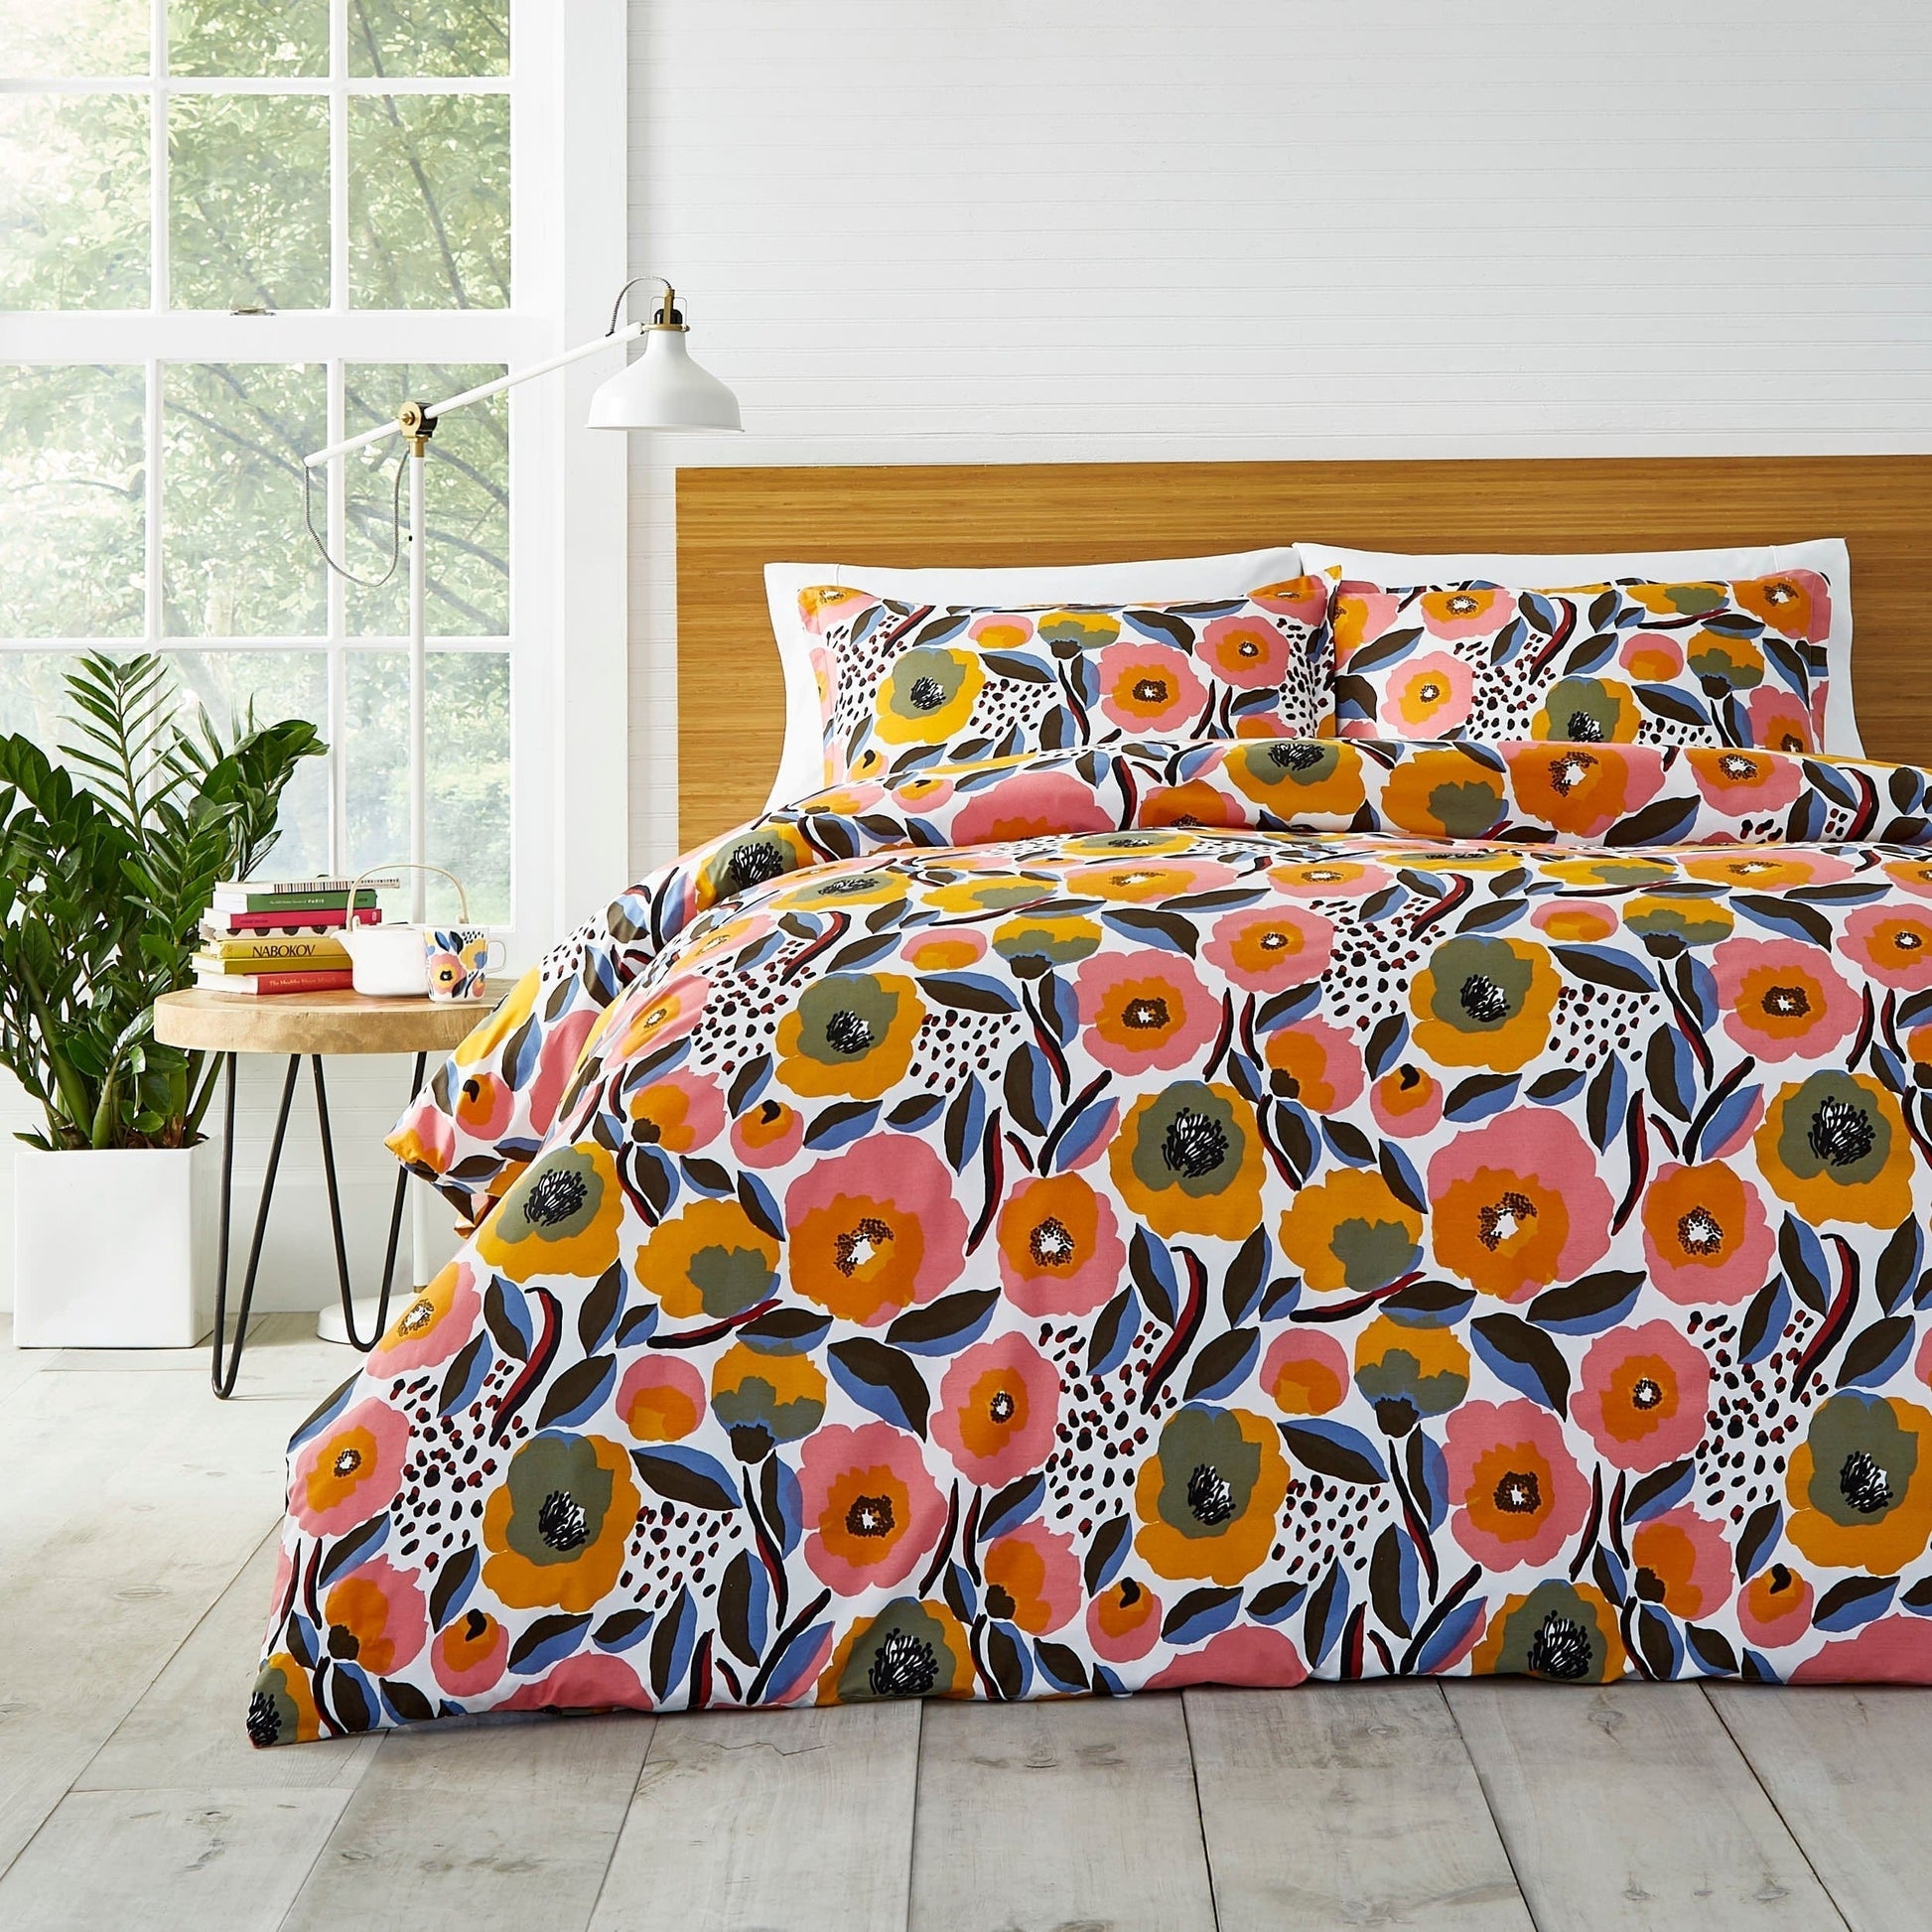 MARIMEKKO Comforter/Quilt/Duvet Full/Queen - 229cm x 244cm / Multicolor Rosarium Comforter Set - 3 Pieces